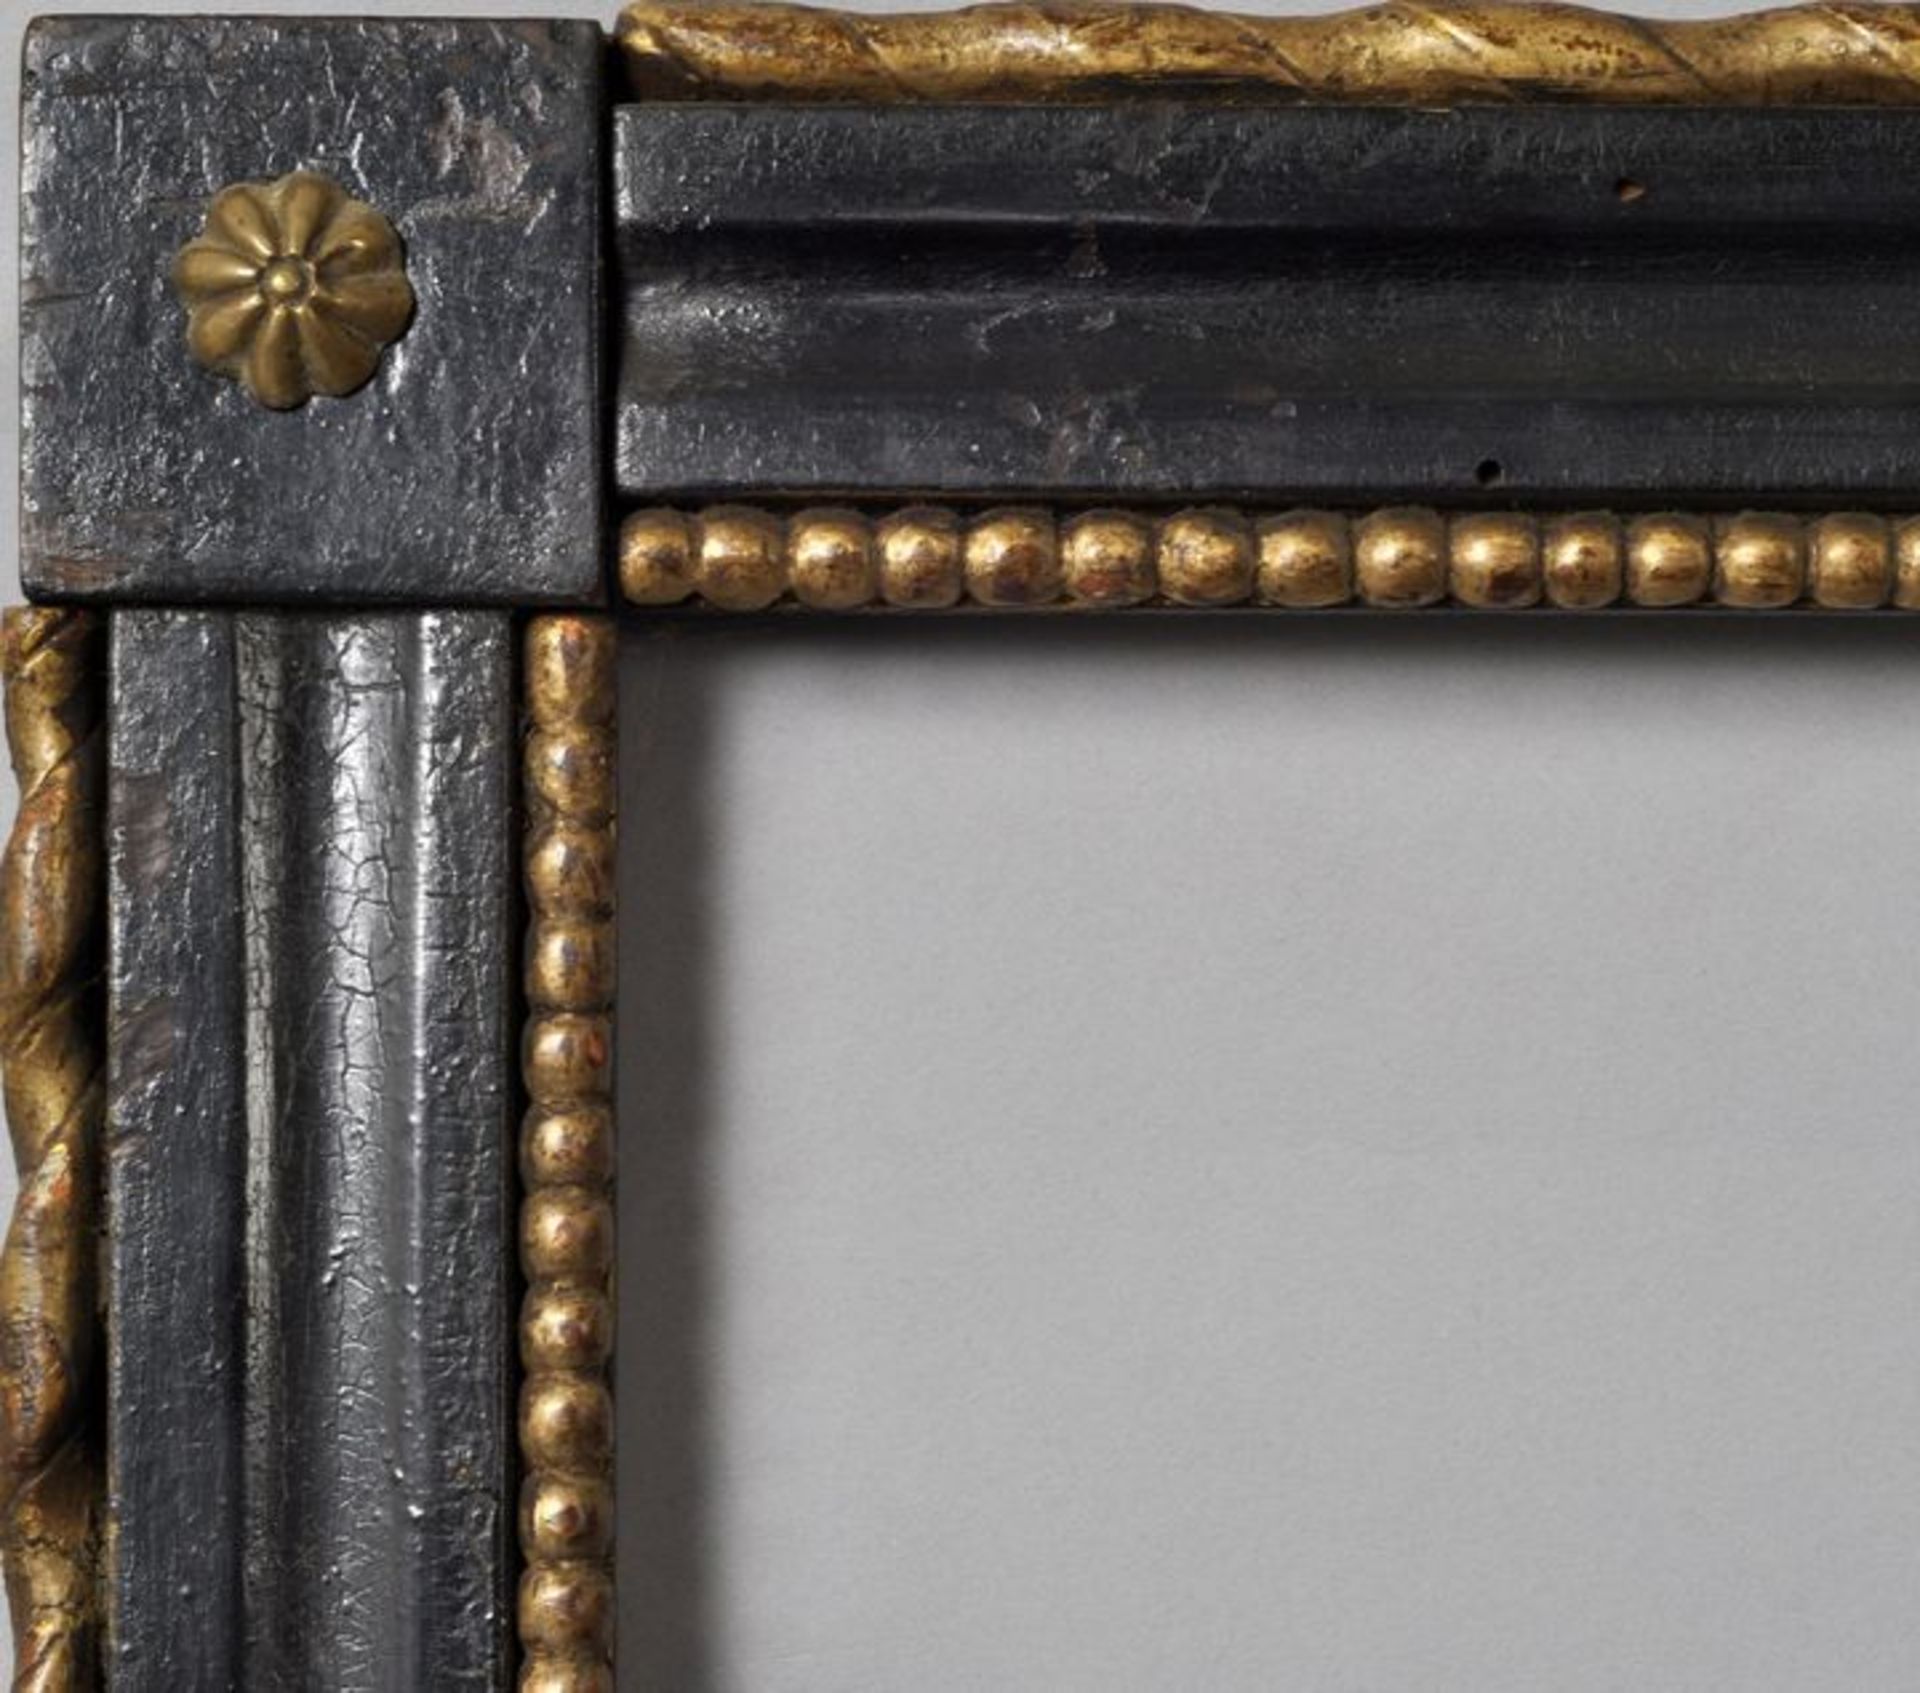 5 cm Holzleiste, im Renaisssance-Stil beschnitzt, 19. Jh. schwarz lackiert, partiell vergoldet,